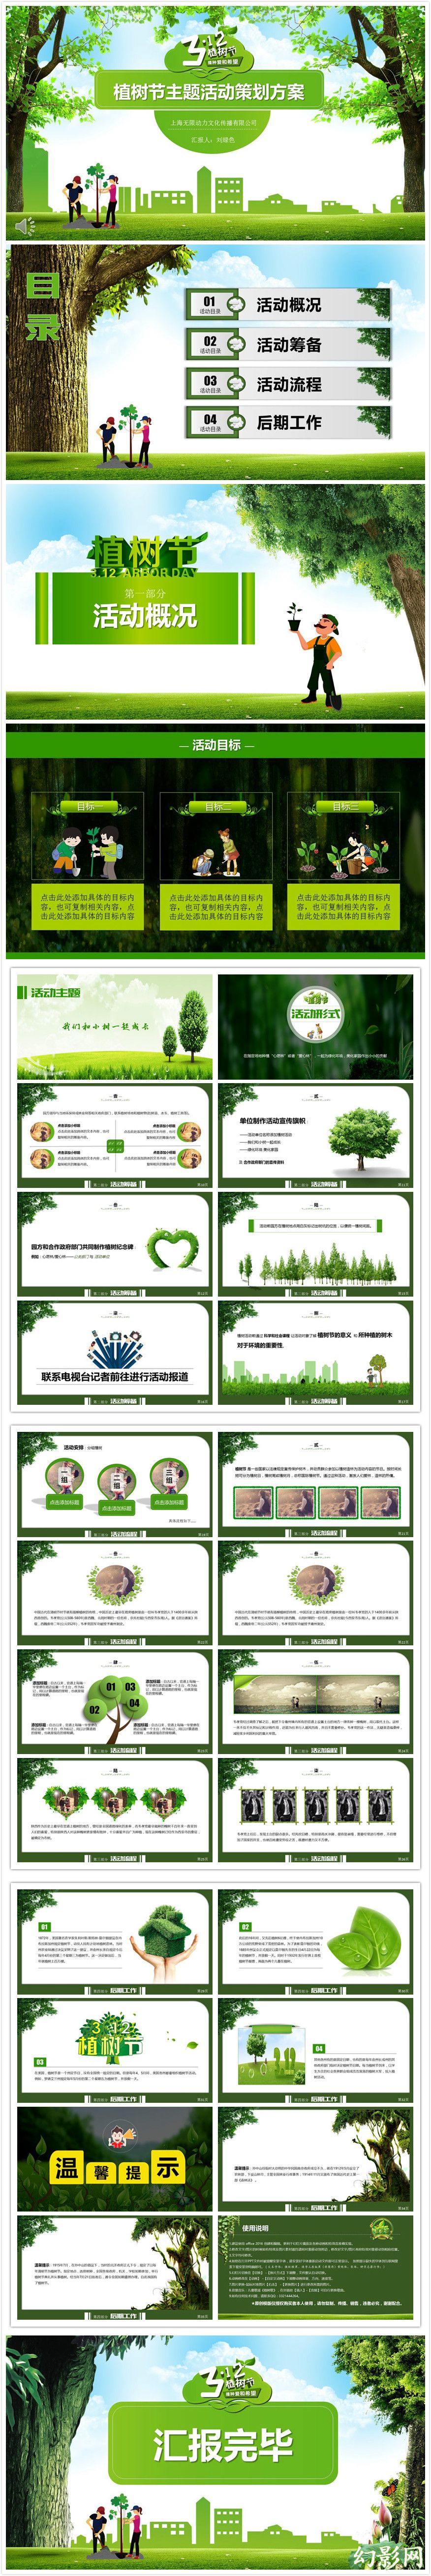 【碧色青丝】3.12植树节主题活动策划方案